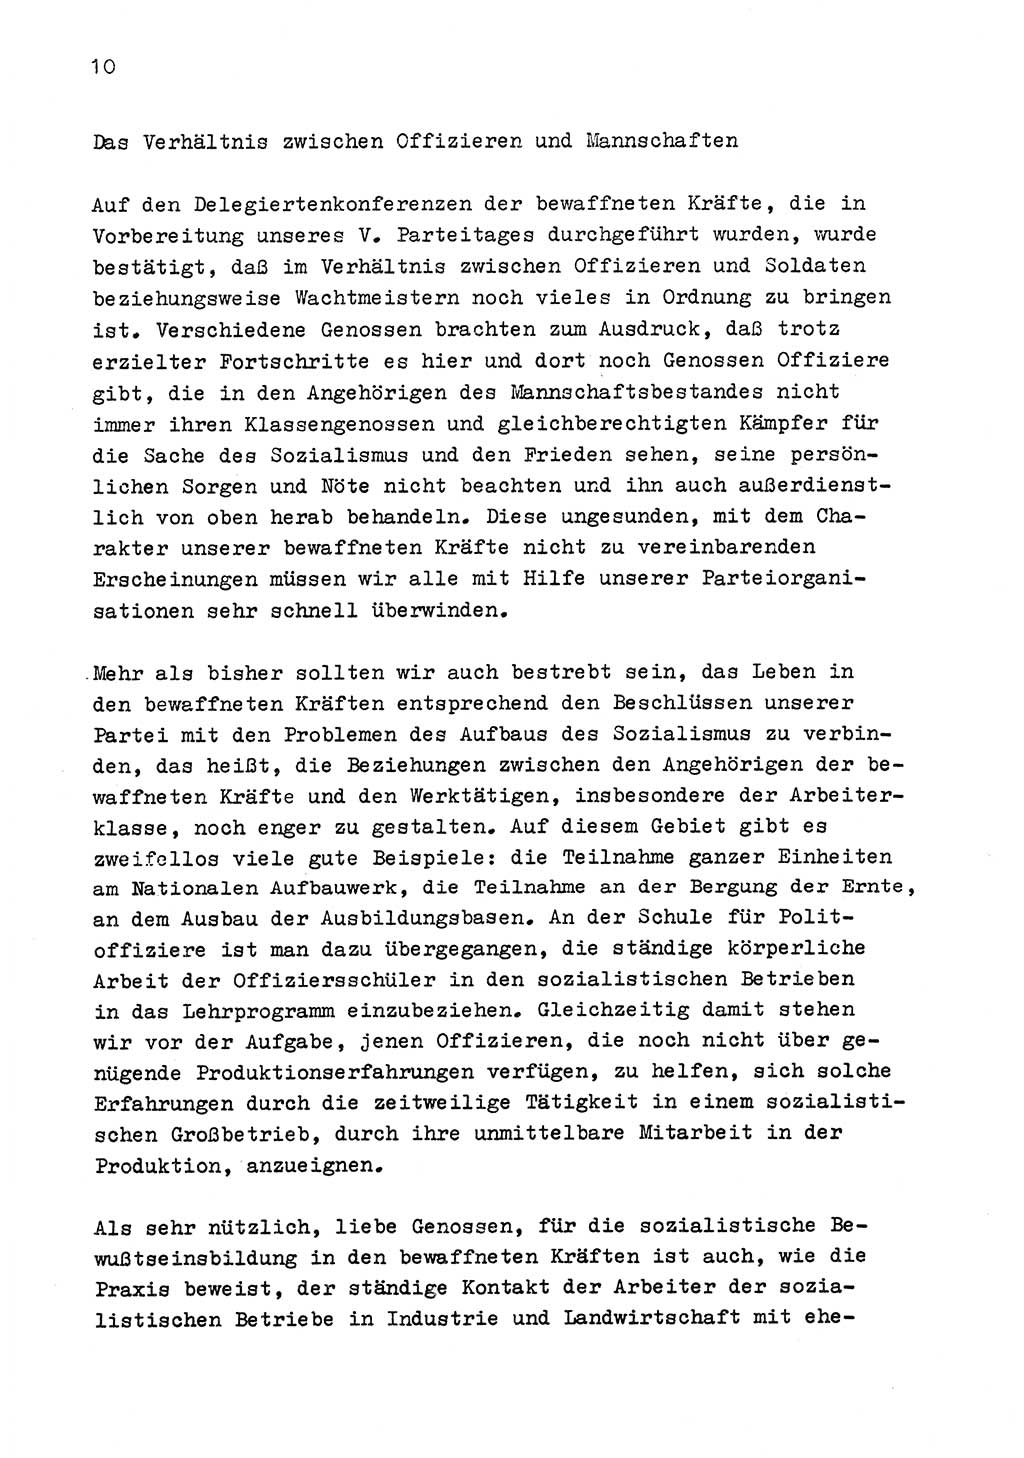 Zu Fragen der Parteiarbeit [Sozialistische Einheitspartei Deutschlands (SED) Deutsche Demokratische Republik (DDR)] 1979, Seite 10 (Fr. PA SED DDR 1979, S. 10)